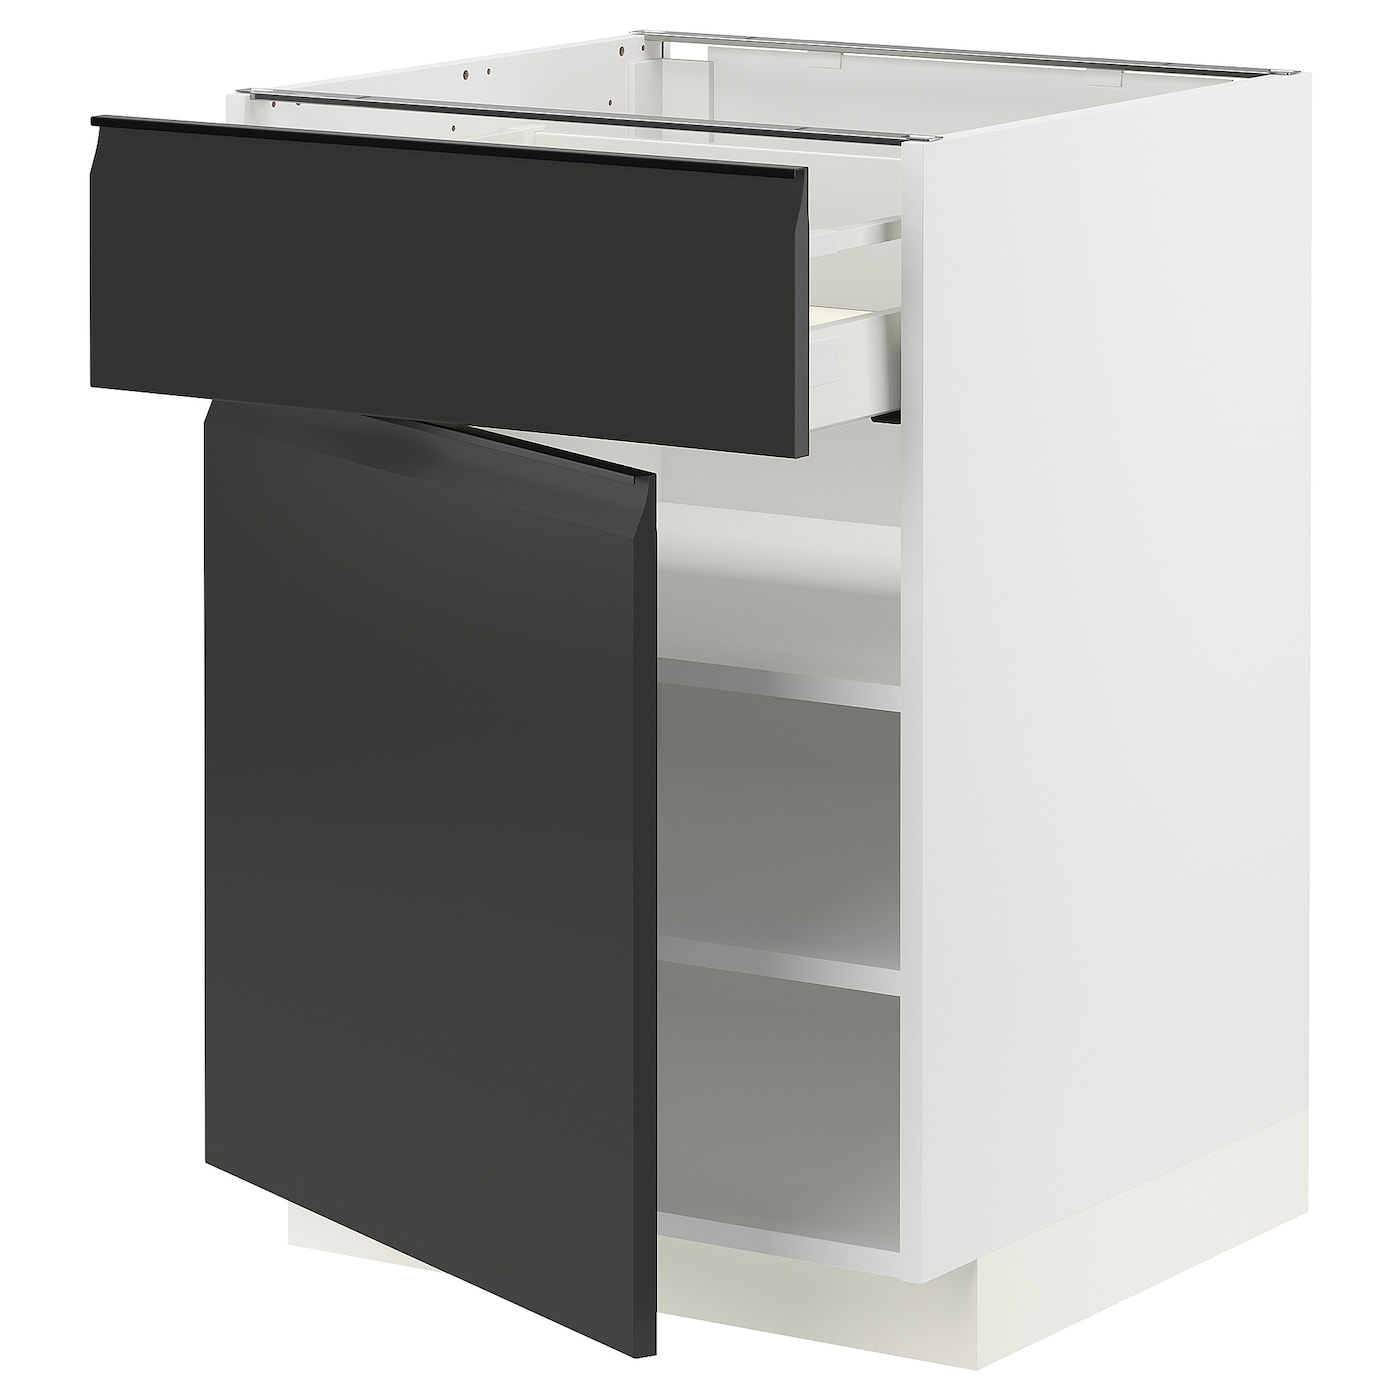 Напольный шкаф - IKEA METOD MAXIMERA, 88x62x60см, белый/черный, МЕТОД МАКСИМЕРА ИКЕА